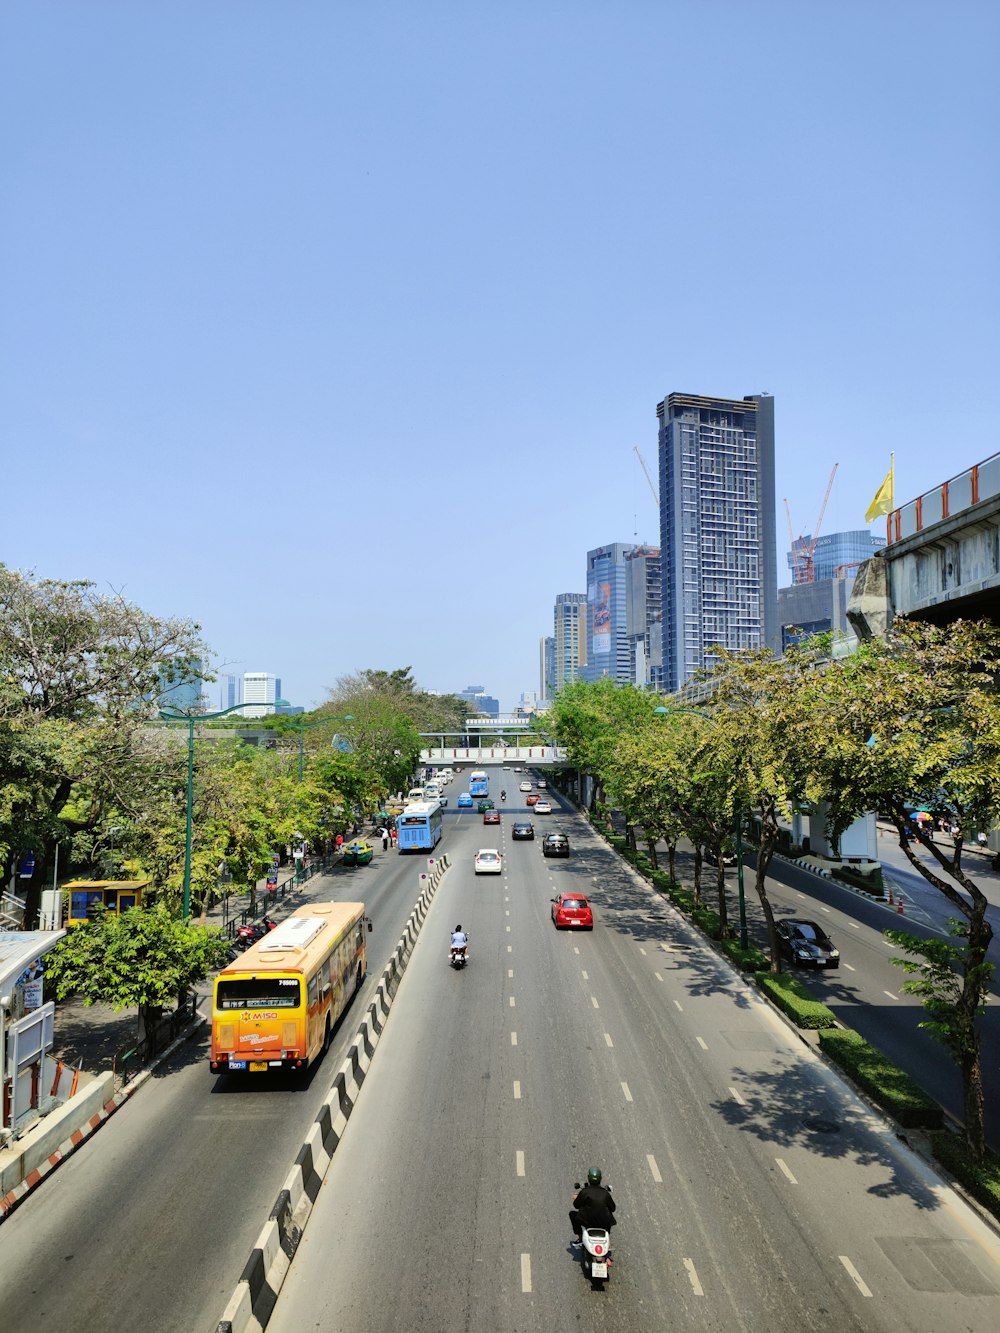 Una strada della città piena di molto traffico accanto a edifici alti